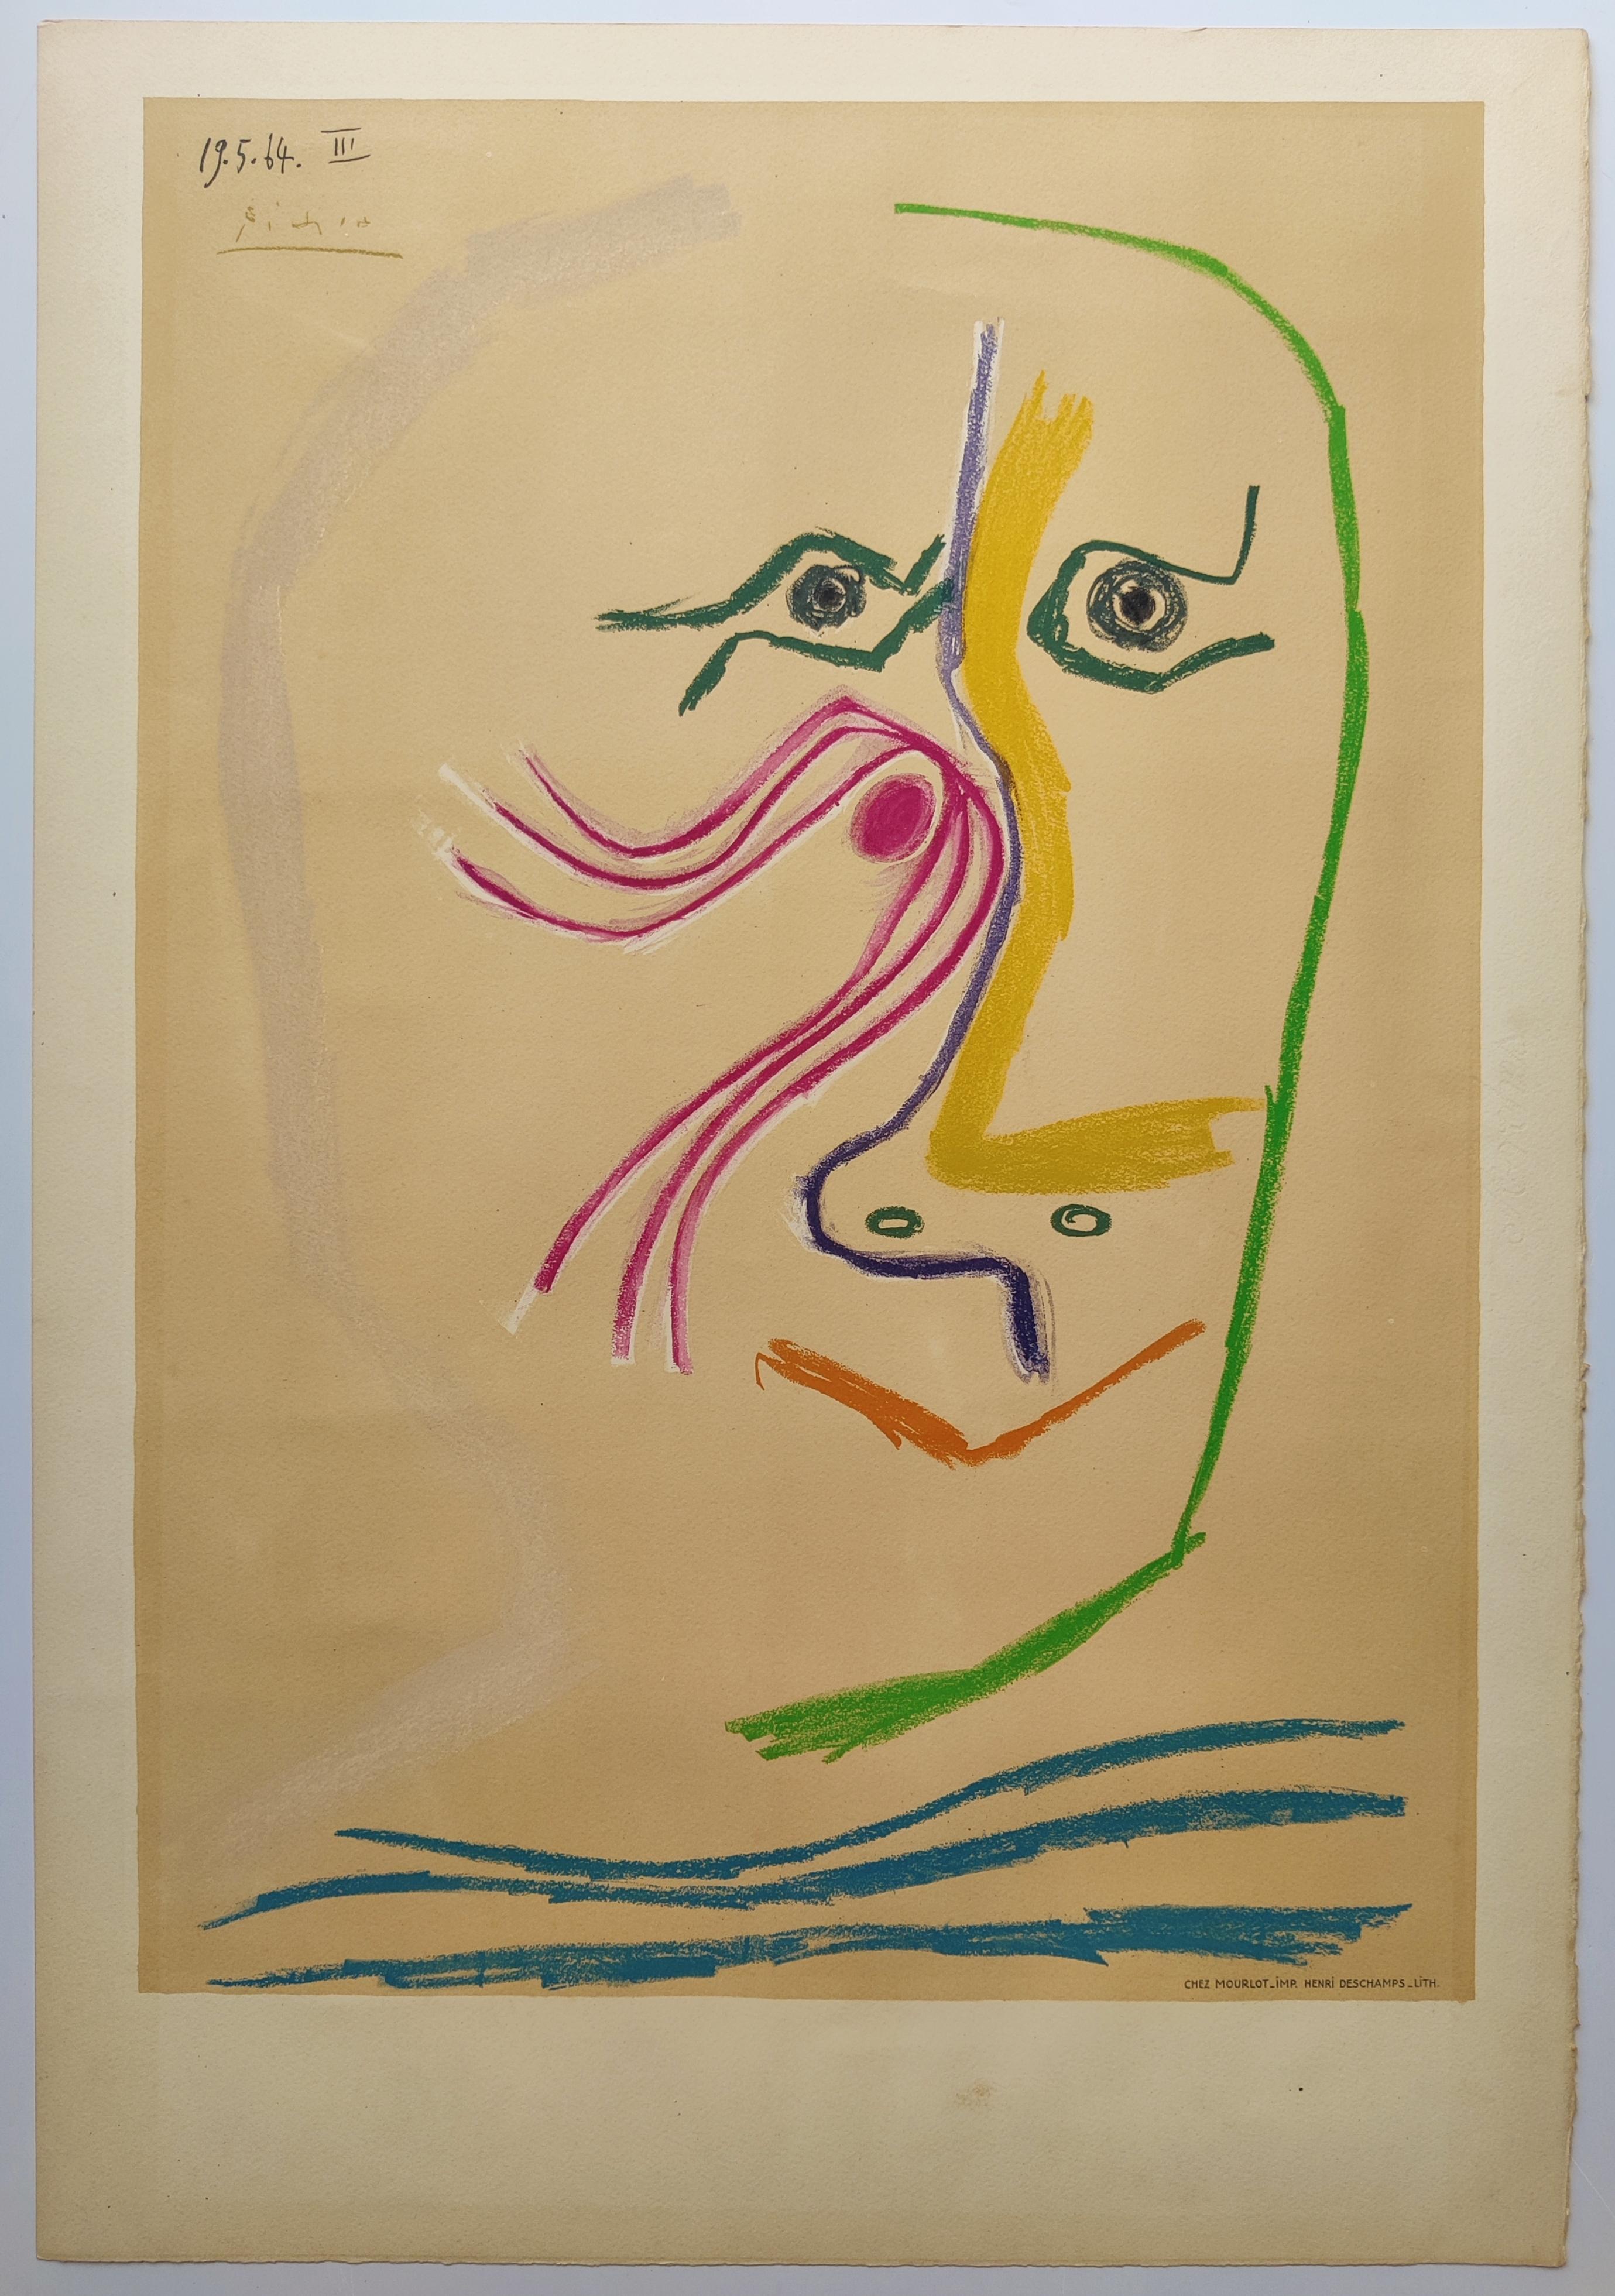 Pablo Picasso
Hommage à René Char, 1969
Color lithograph on Arches wove paper  by Henri Deschamps, Paris
Signed in the plate 
Image size: 63.6 x 44.7 cm
Sheet size: 75.7 x 52 cm
Printed by Mourlot, Paris
Published by Musée Municipal d'Art Moderne,